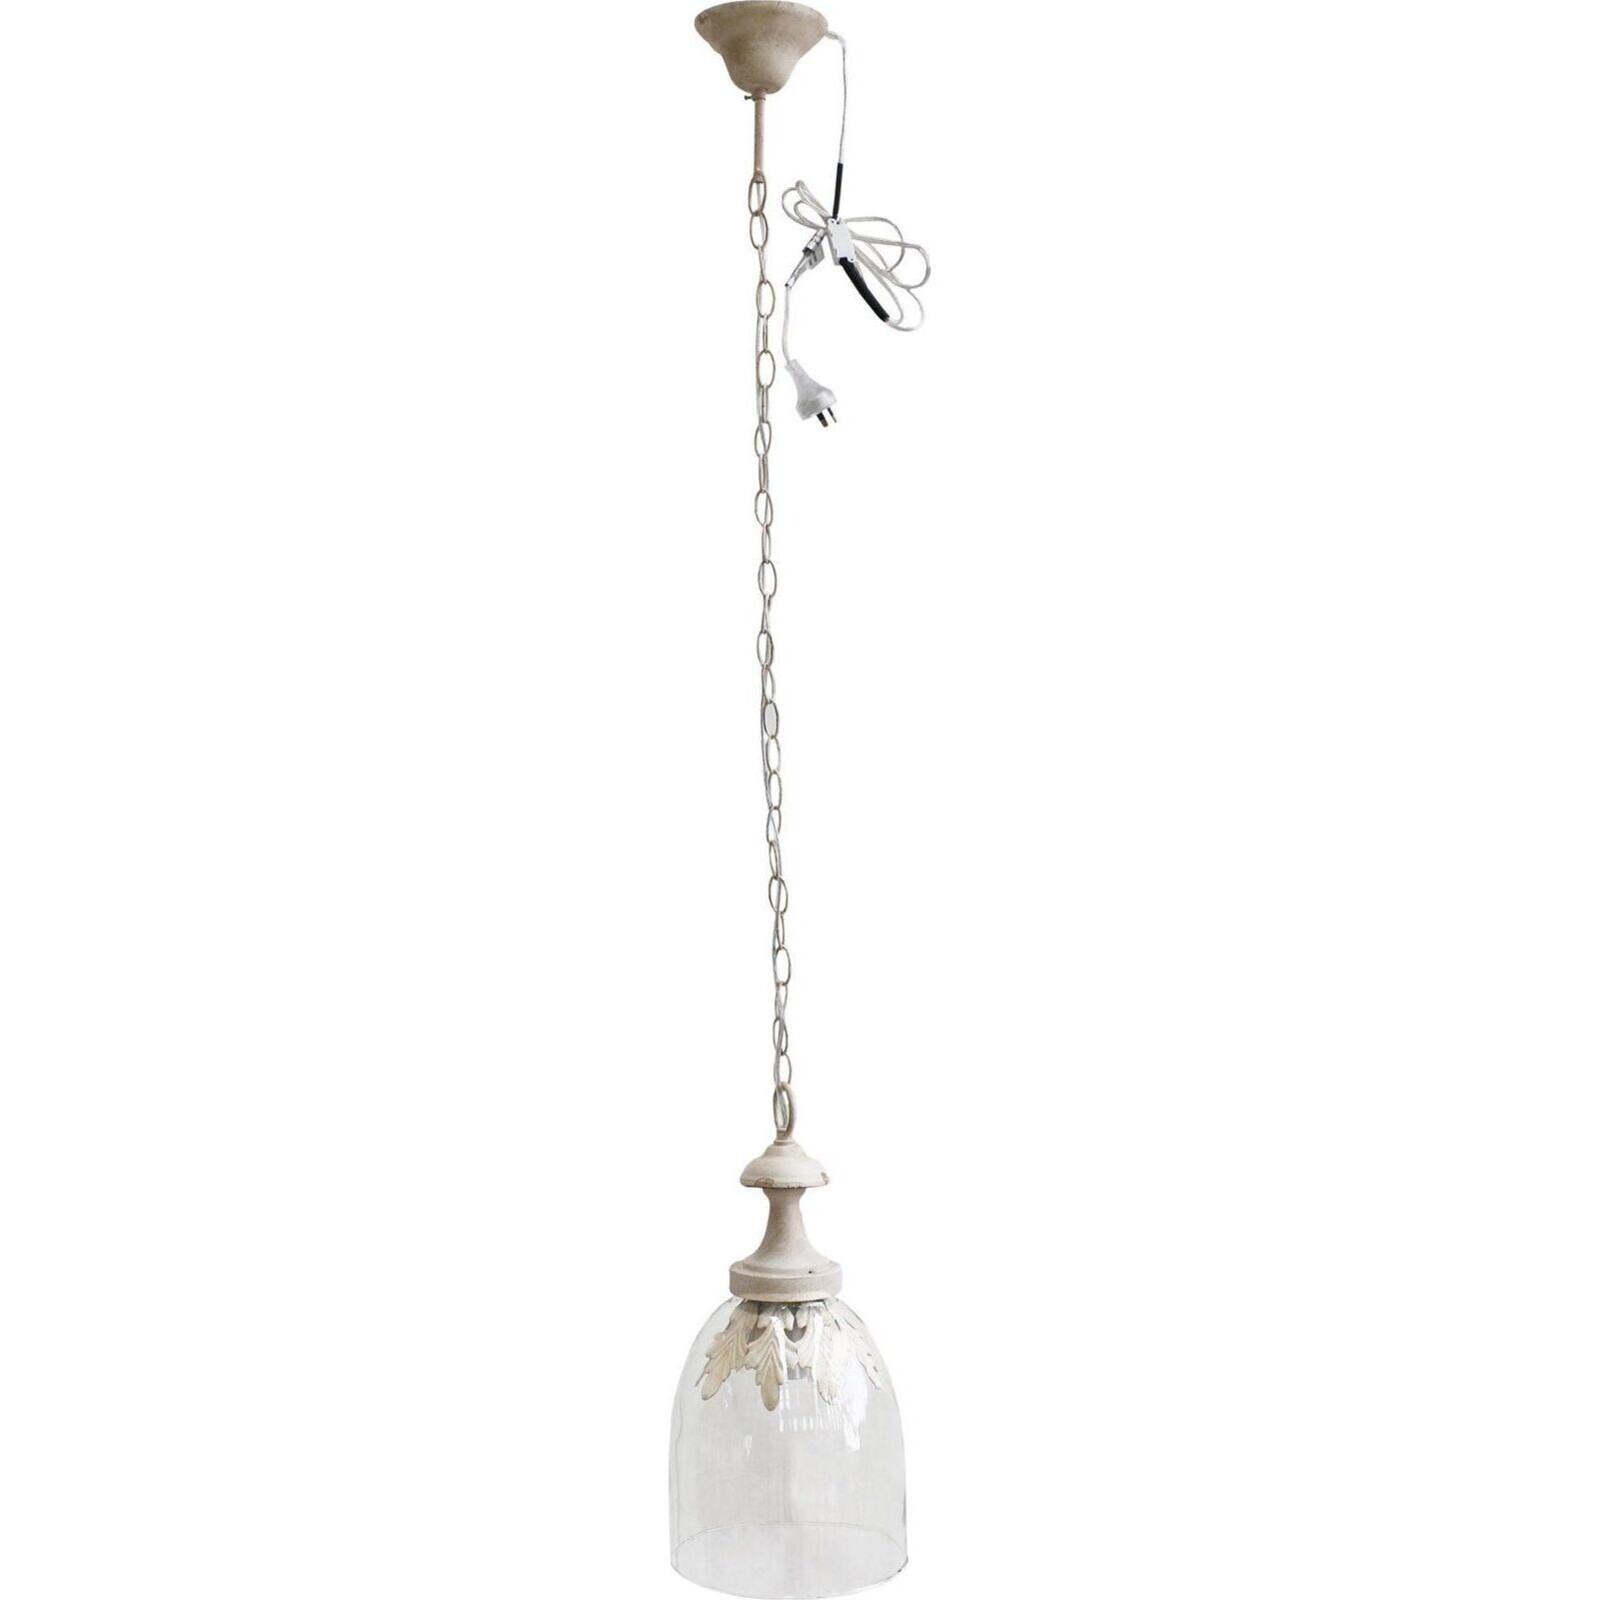 Hanging Lamp Le Antiqu